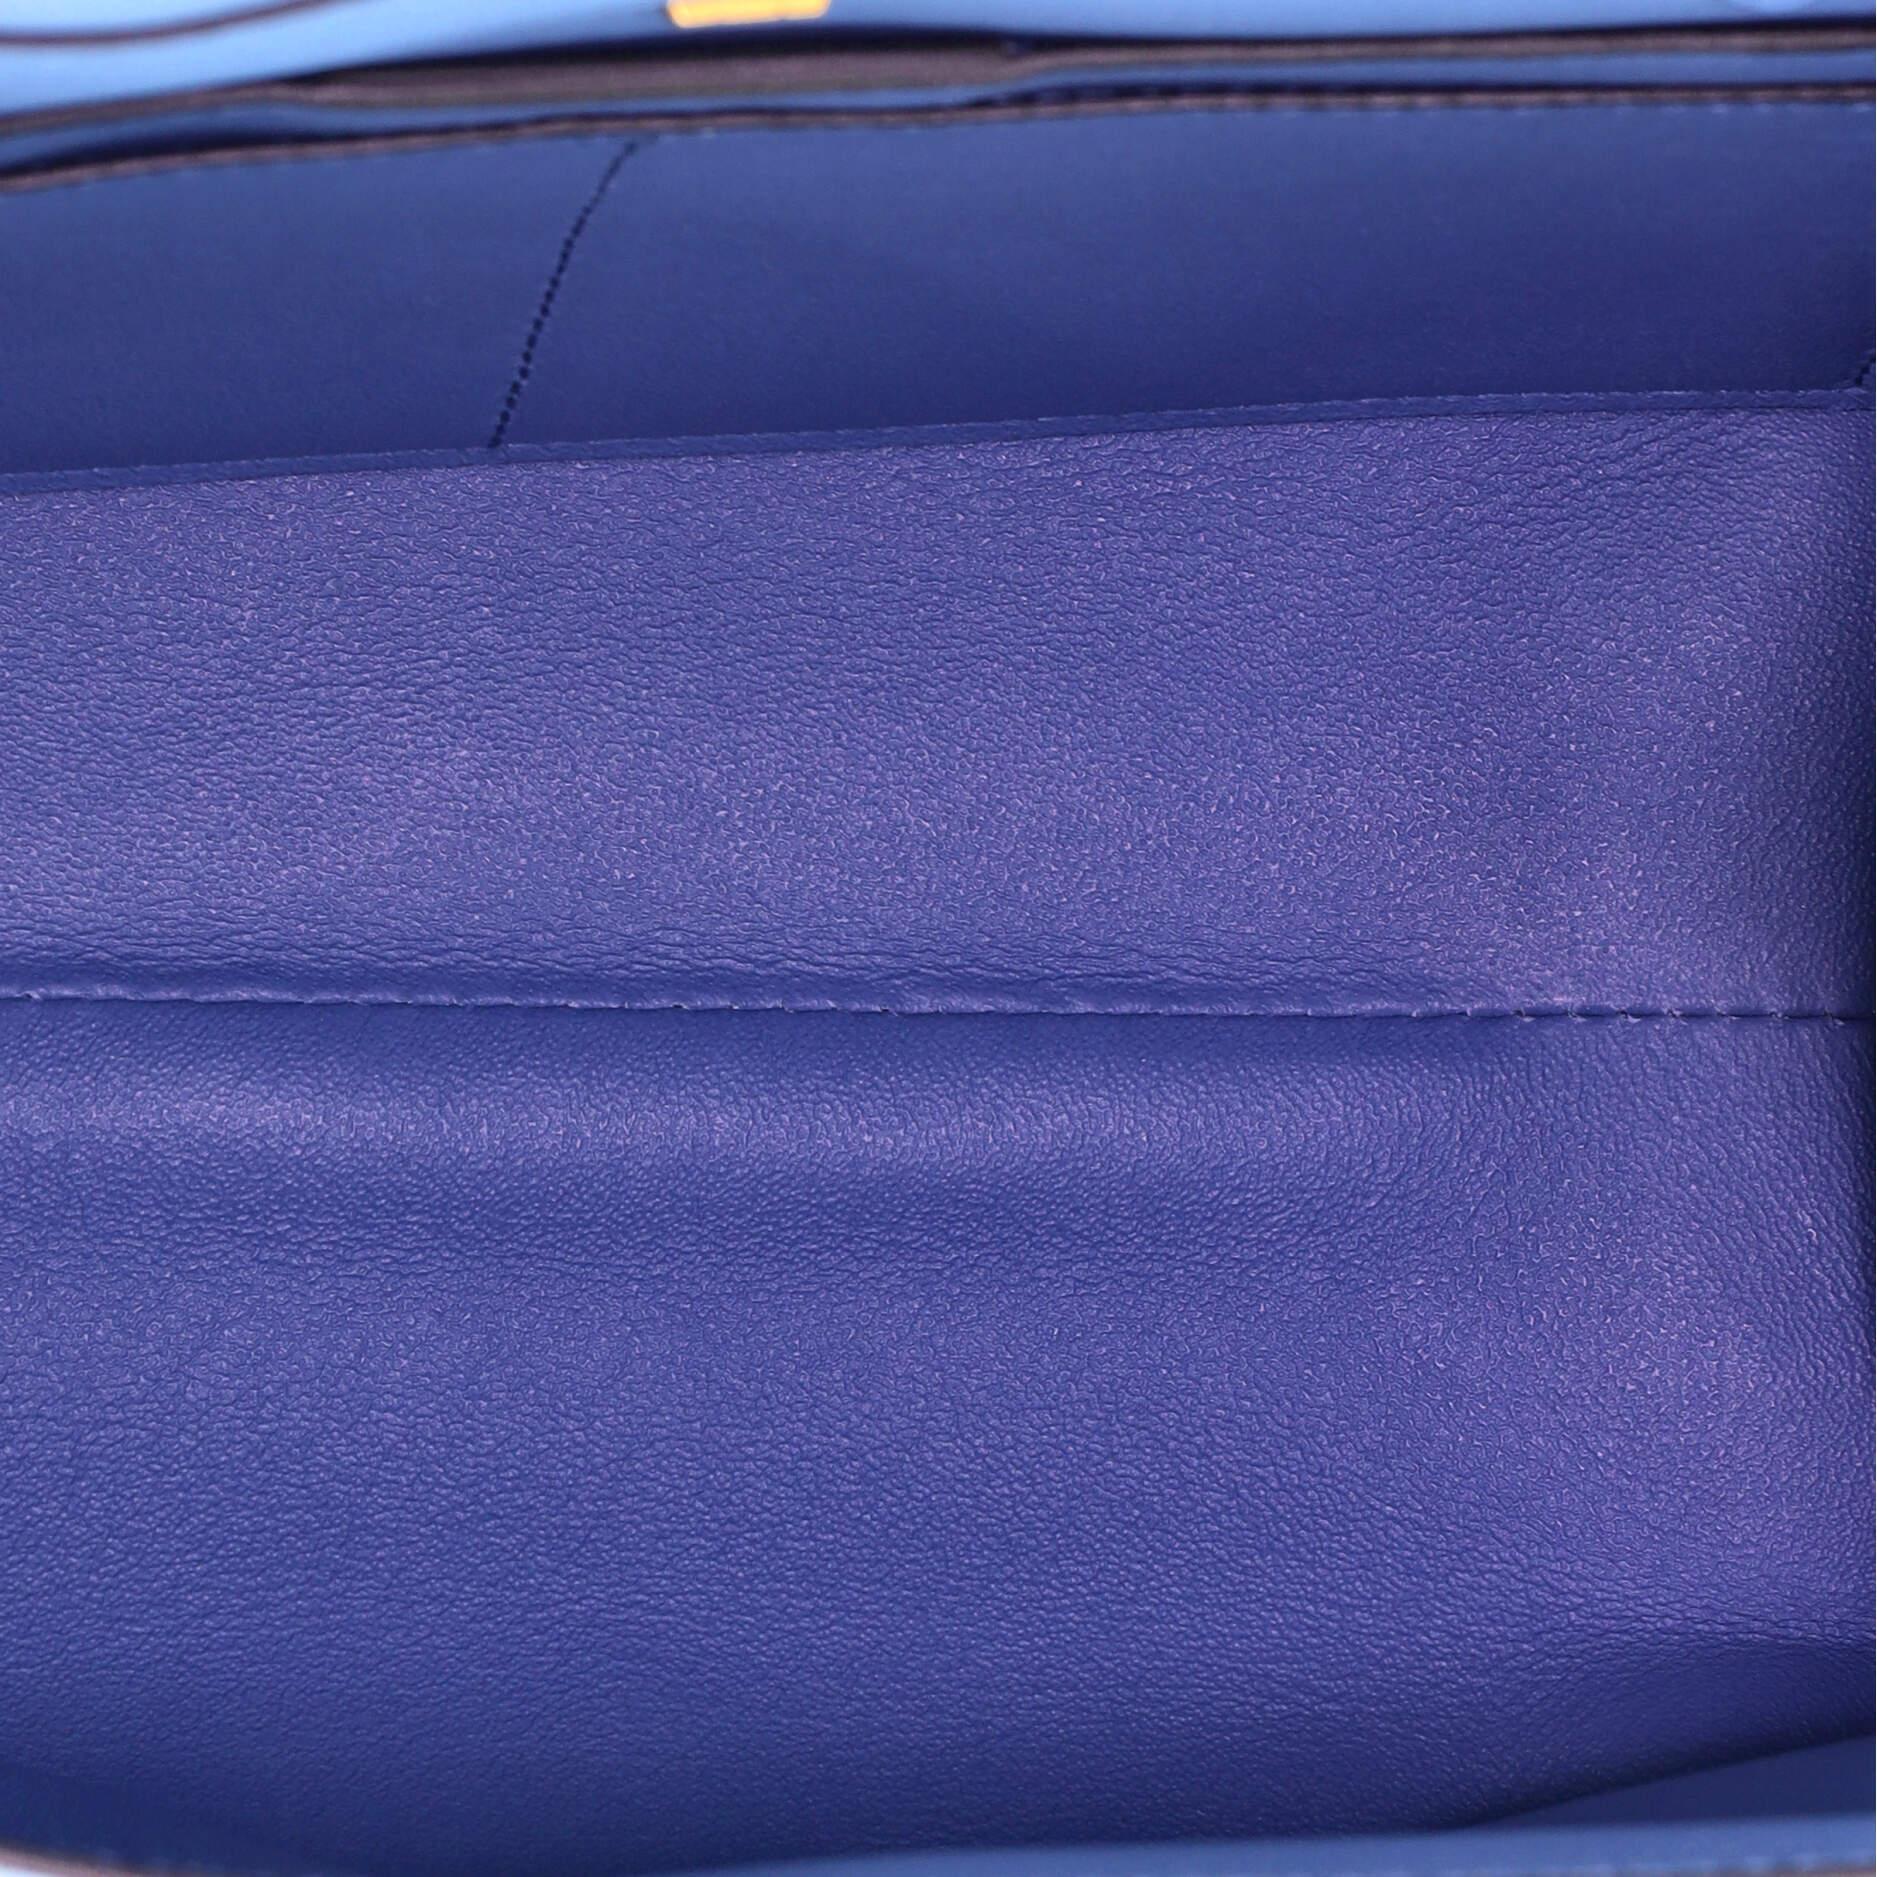 Women's or Men's Salvatore Ferragamo Trifolio Top Handle Bag Leather Small